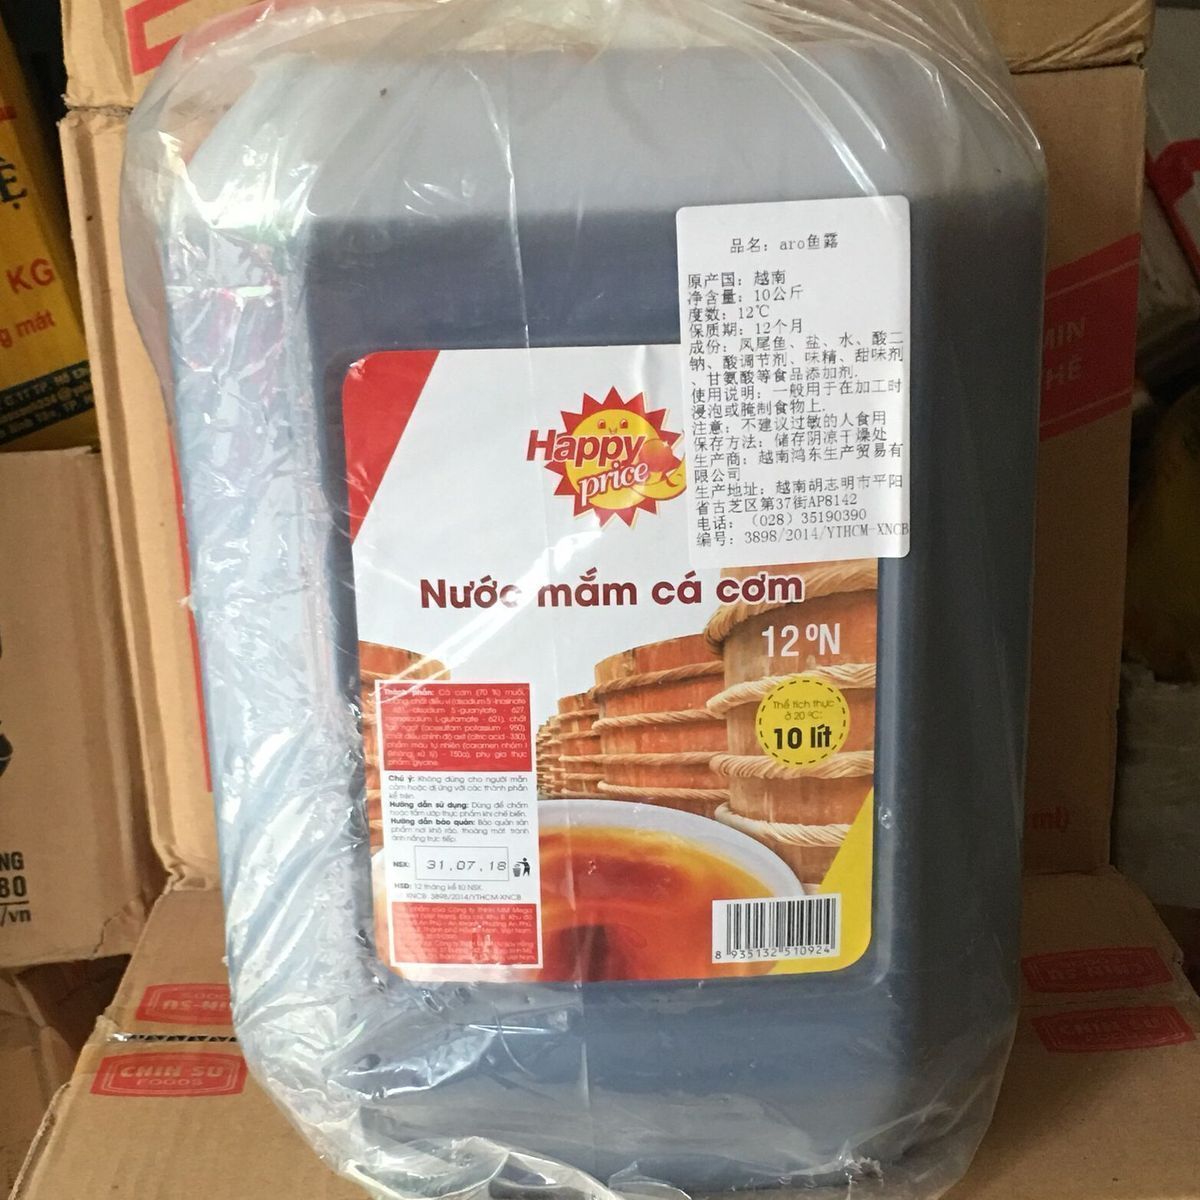 越南芽庄海鲜鱼露汁10公斤装12度浓香型长期出售各种特色美食小吃